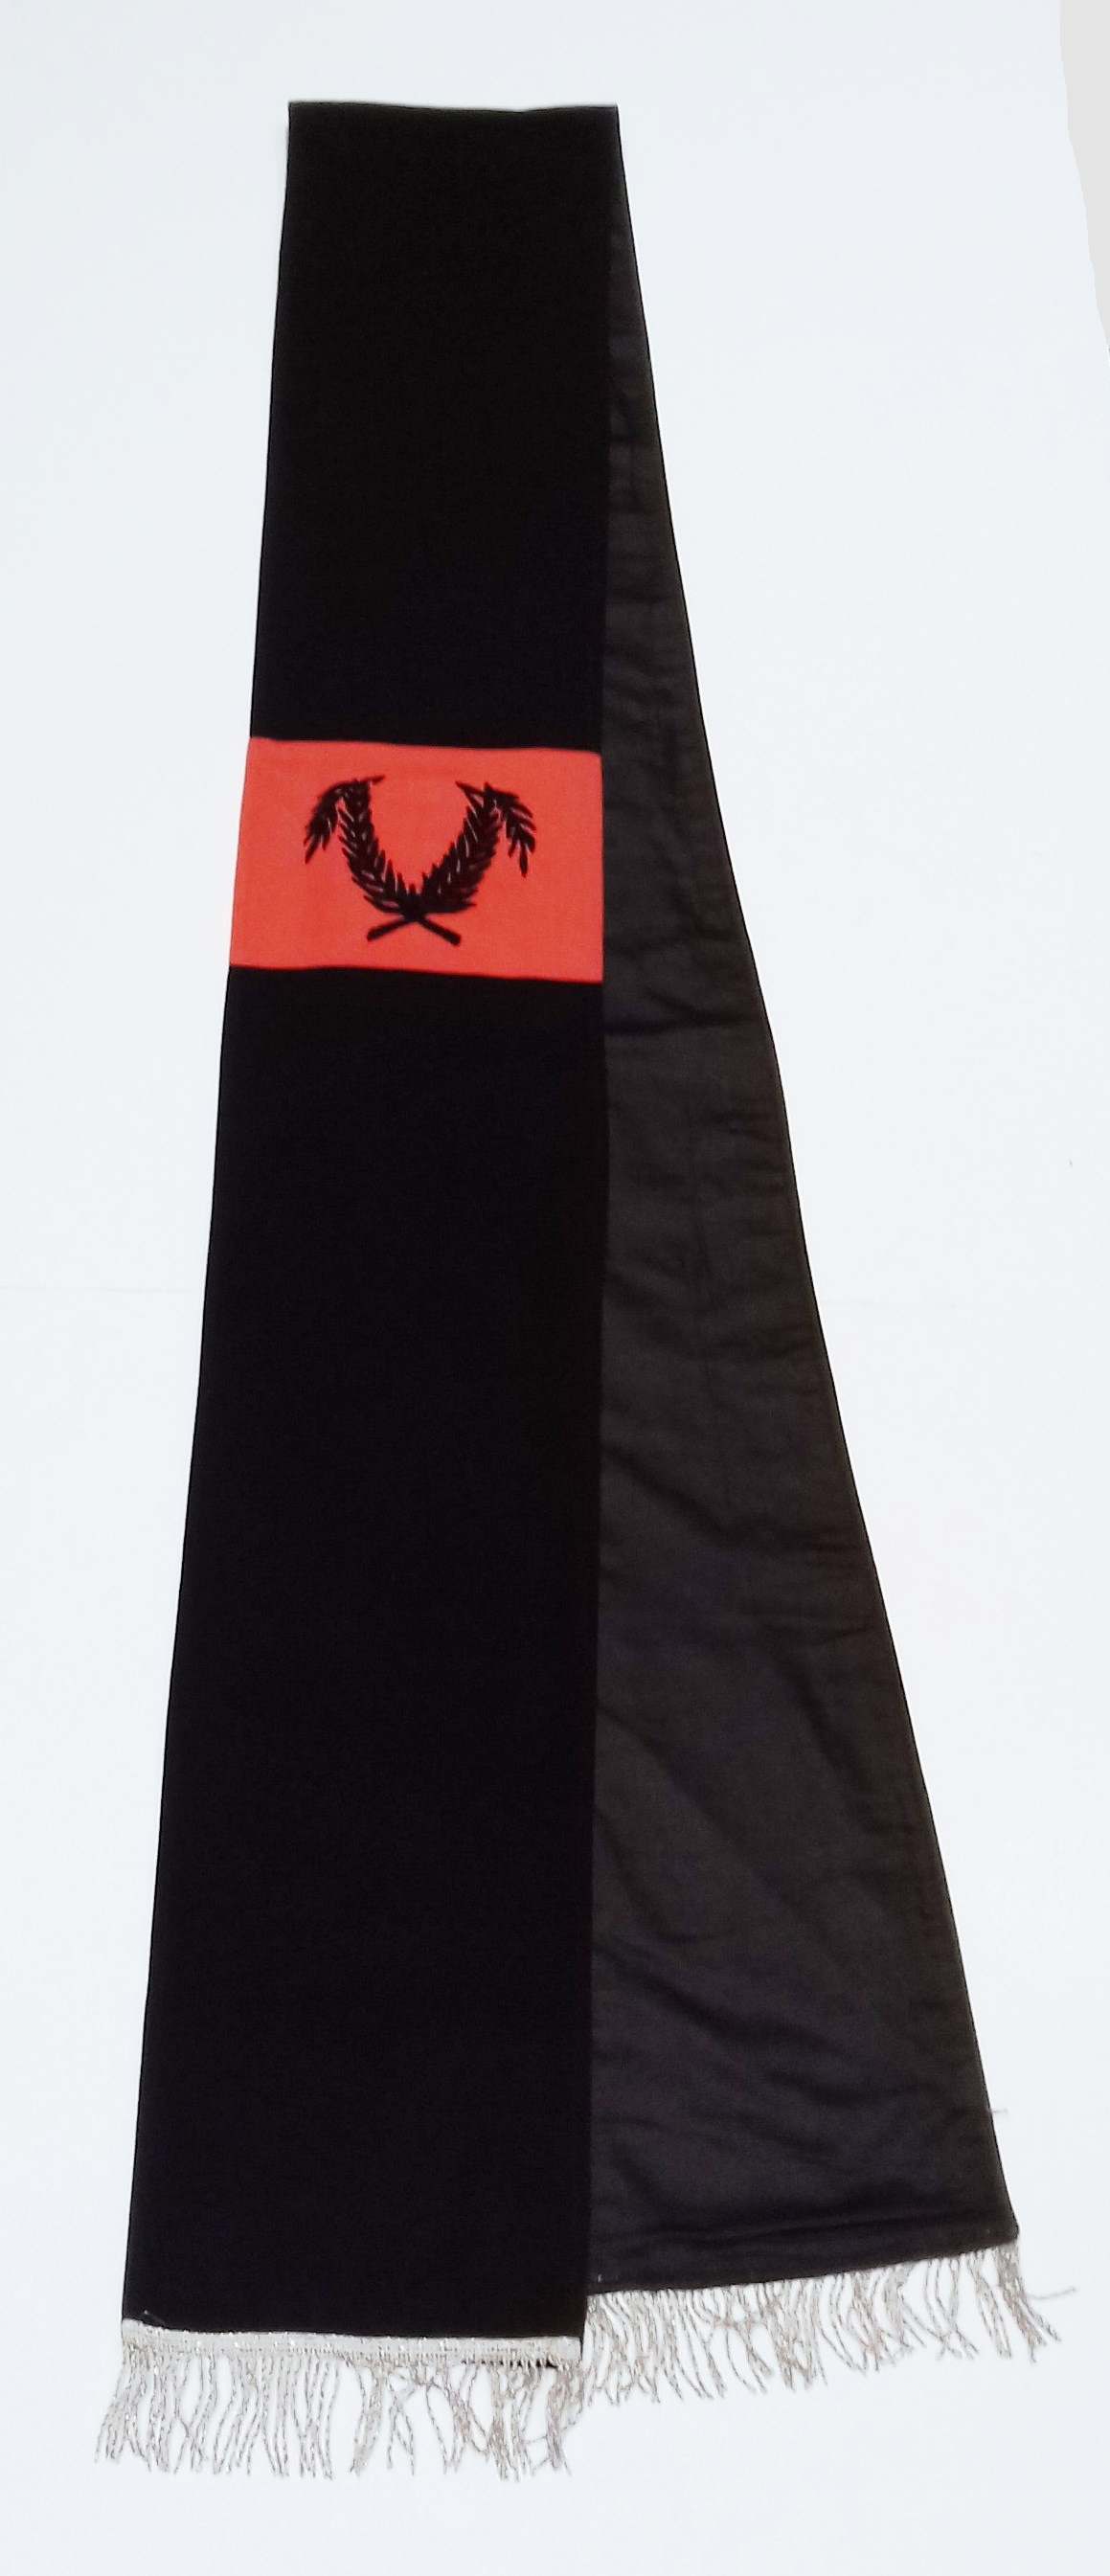 Gyászhuszár vállszalag - vörös-fekete díszítménnyel (Nemzeti Örökség Intézete – Kegyeleti Múzeum CC BY-NC-SA)